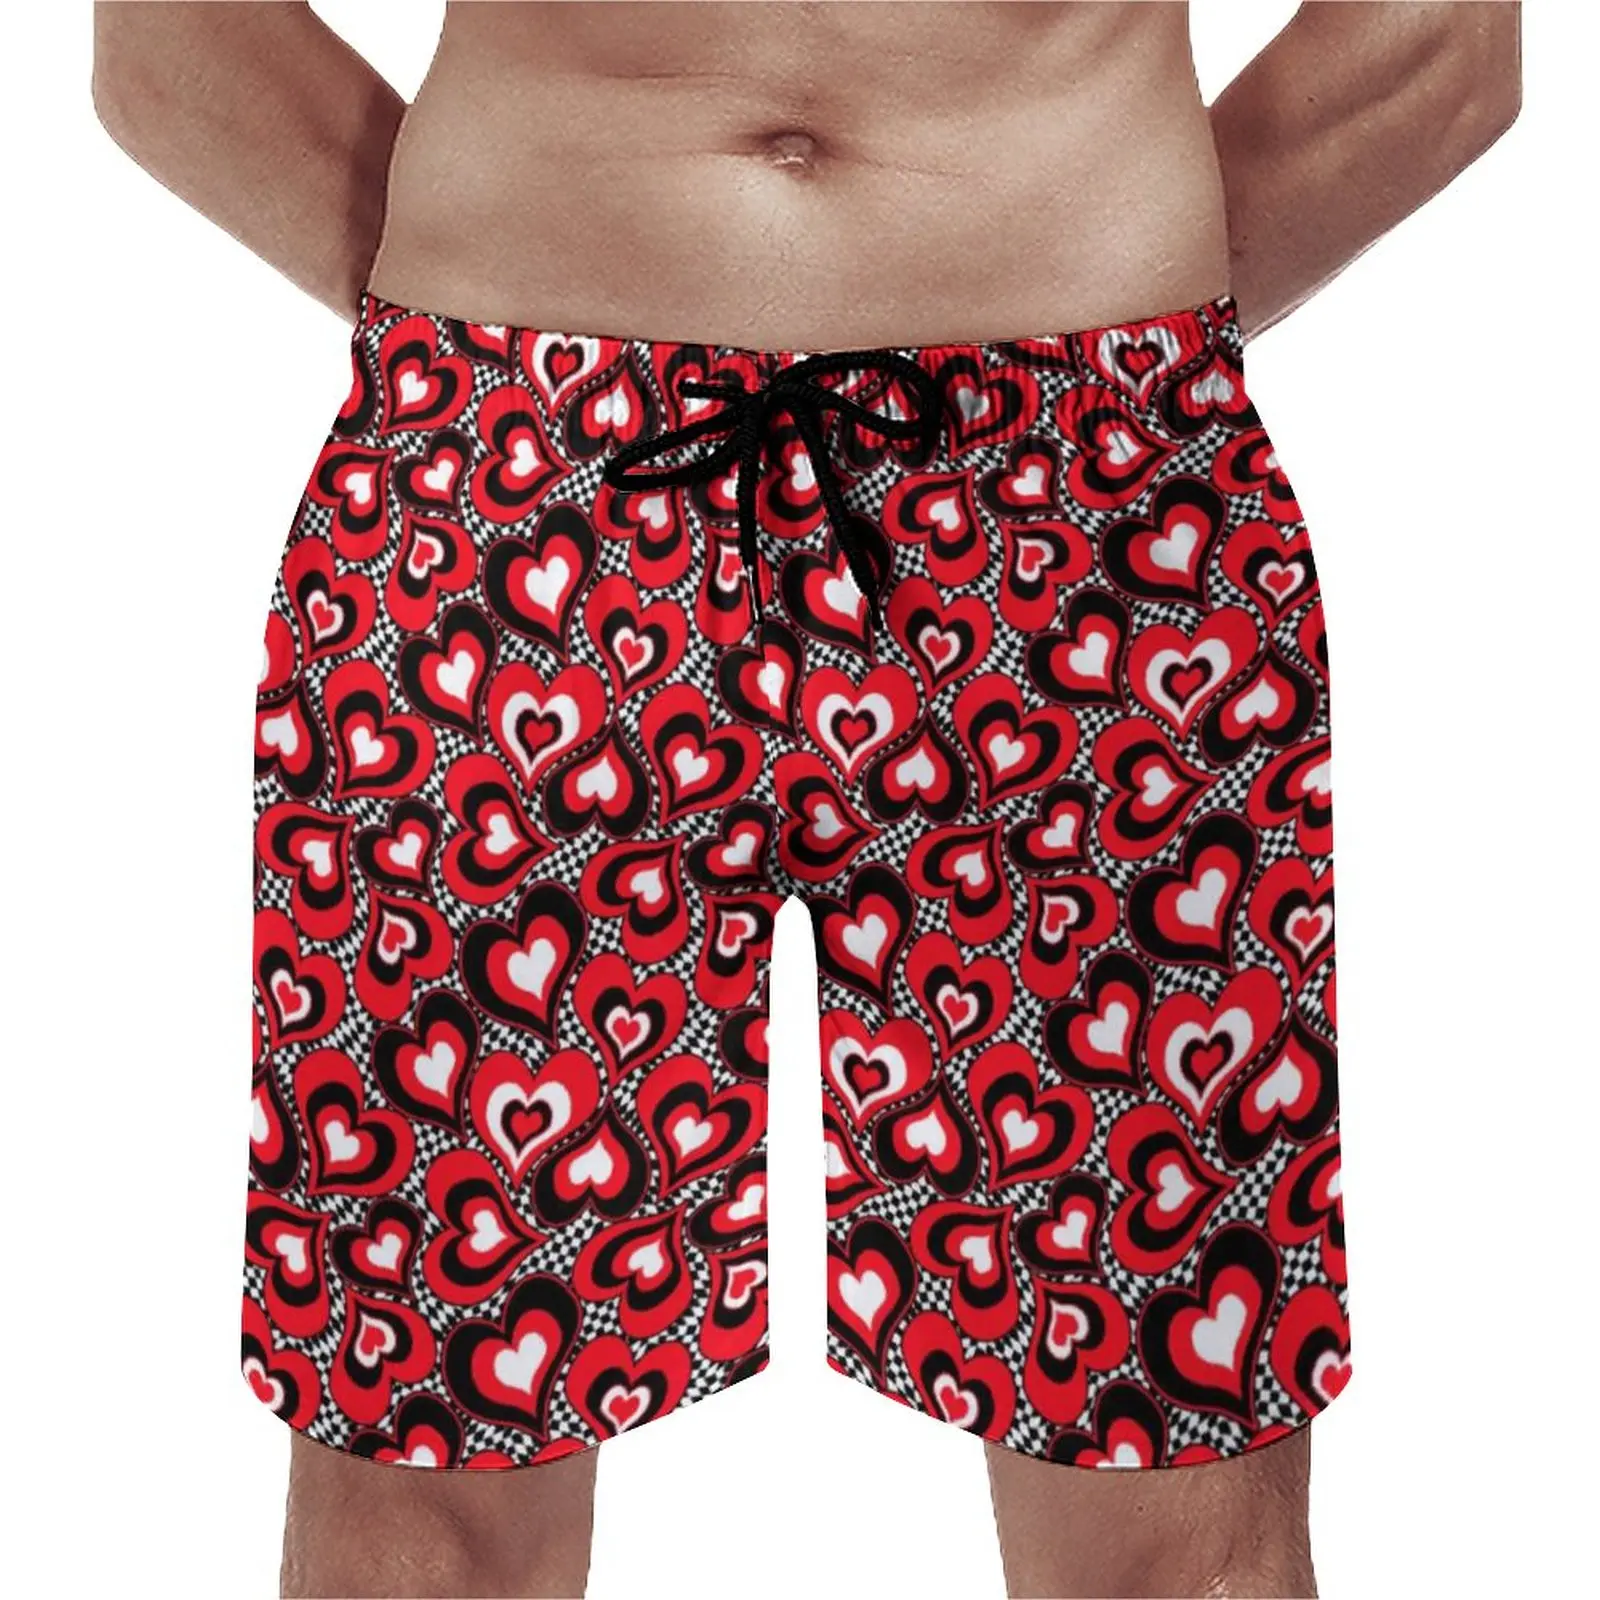 

Шорты для спортзала Love Heart мужские, праздничные короткие штаны, быстросохнущие пляжные плавки, идея для подарка